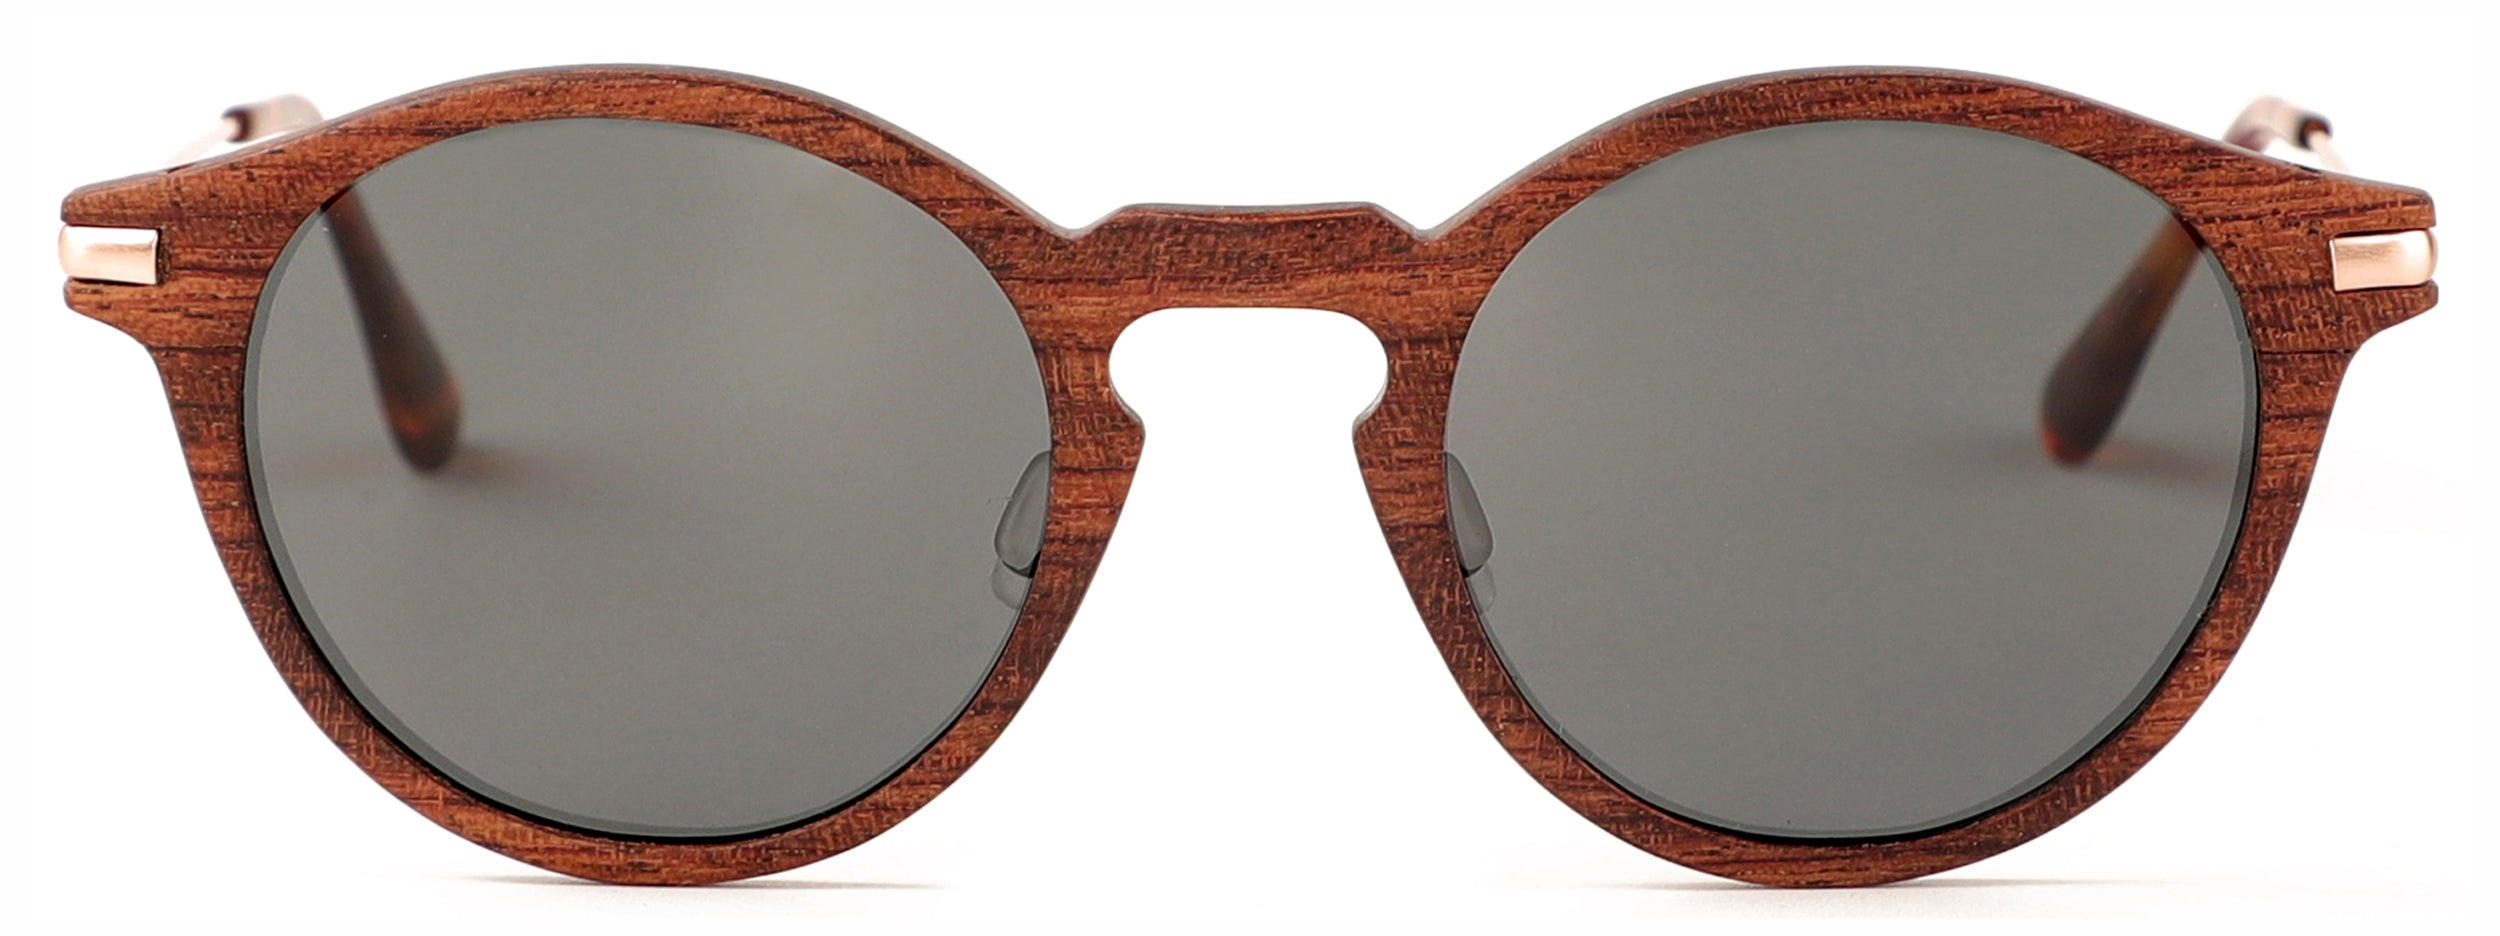 Del Rey Sunglasses (RX Compatible)